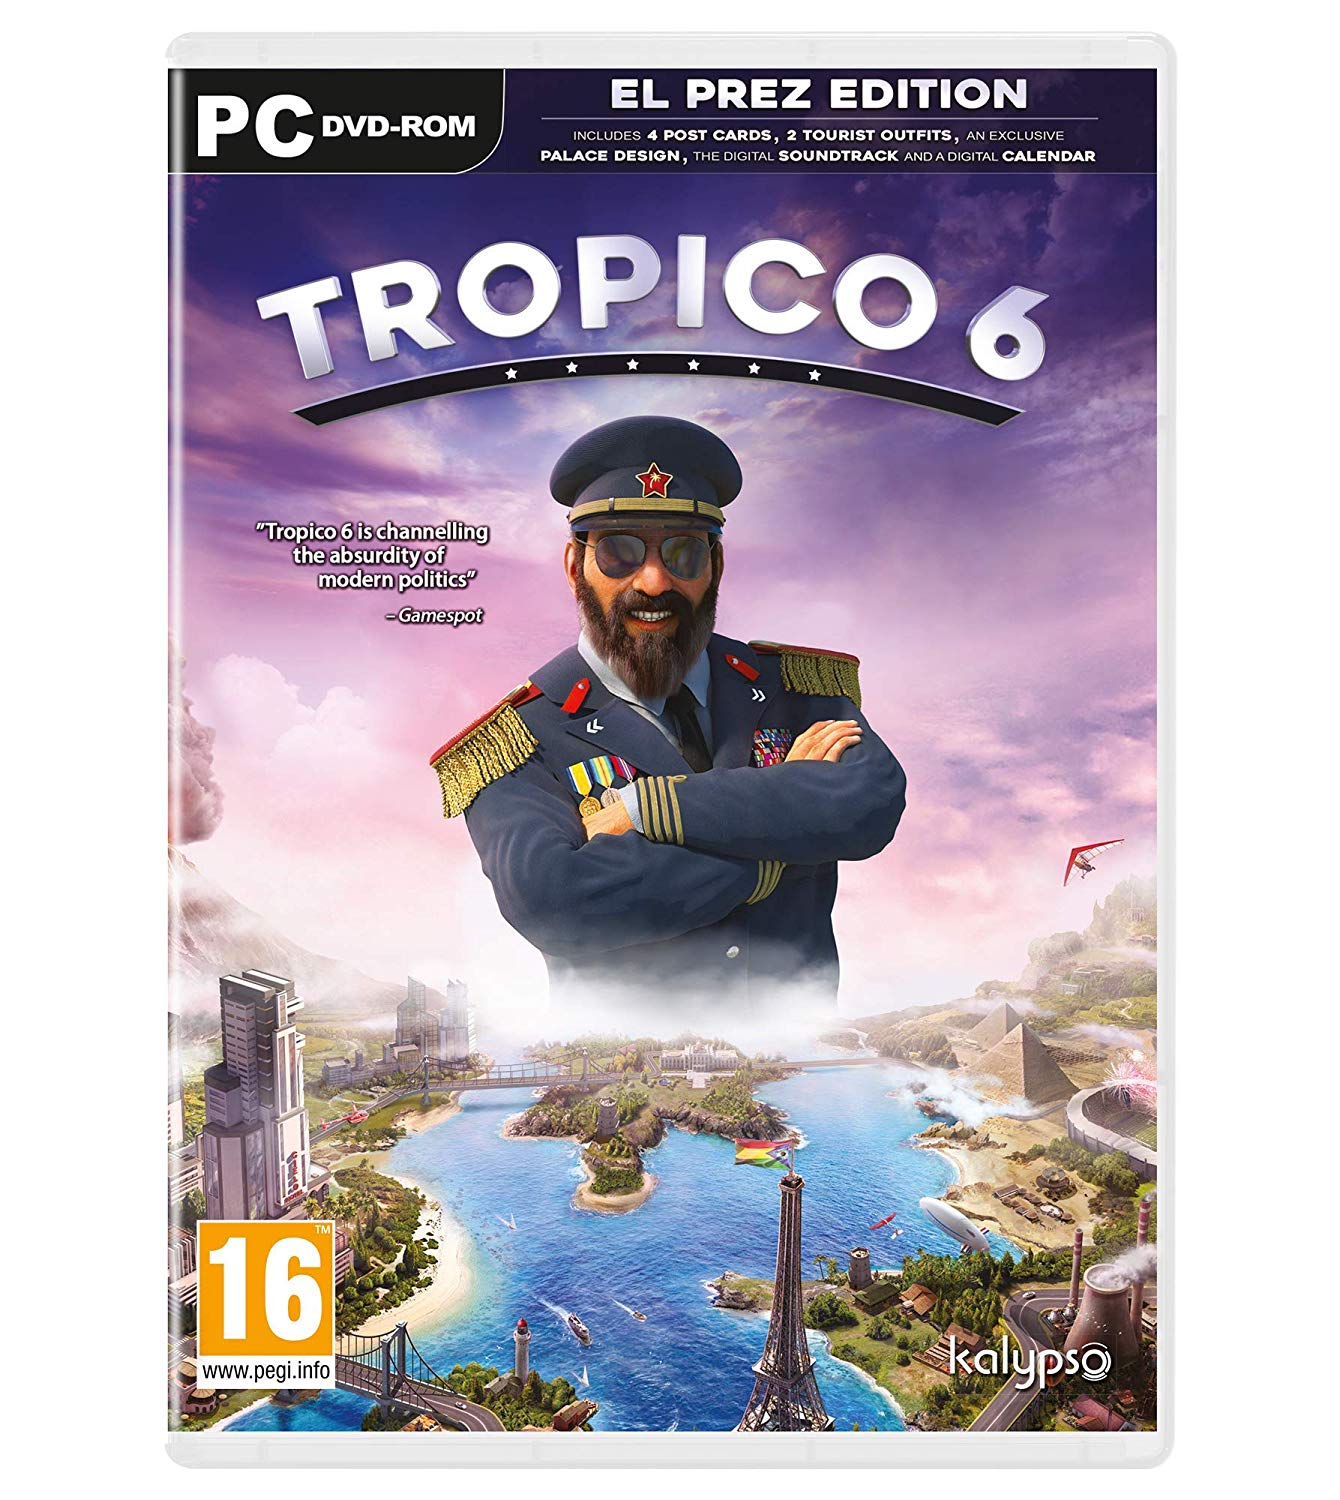 Tropico 6 El Prez Edition CD Key For Steam: GLOBAL (works worldwide)